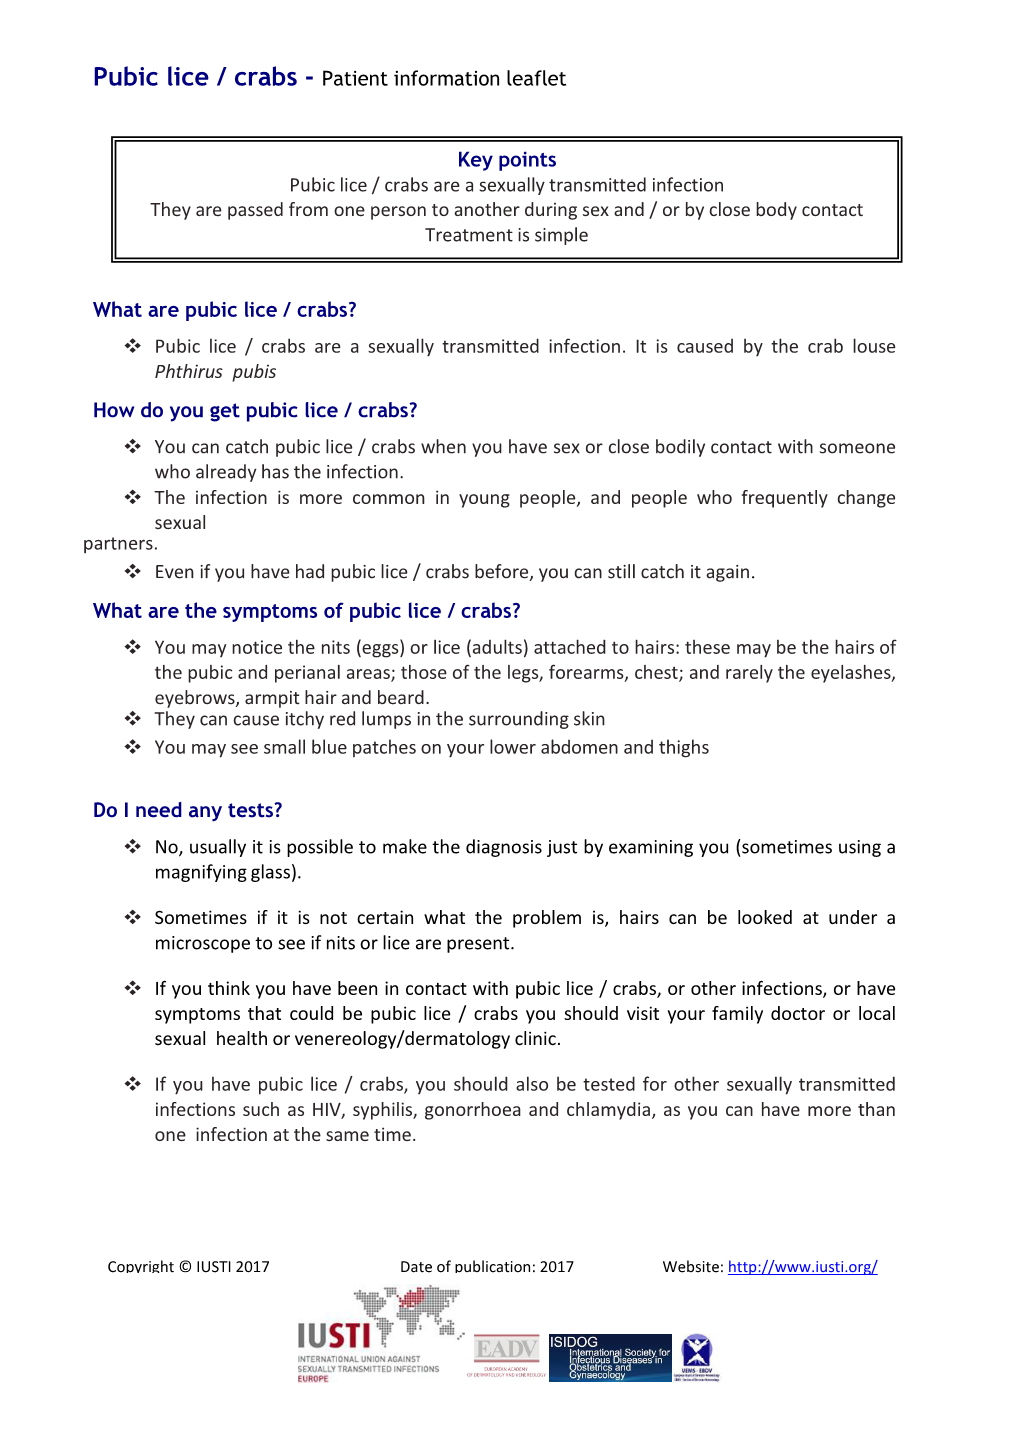 Pubic Lice / Crabs - Patient Information Leaflet